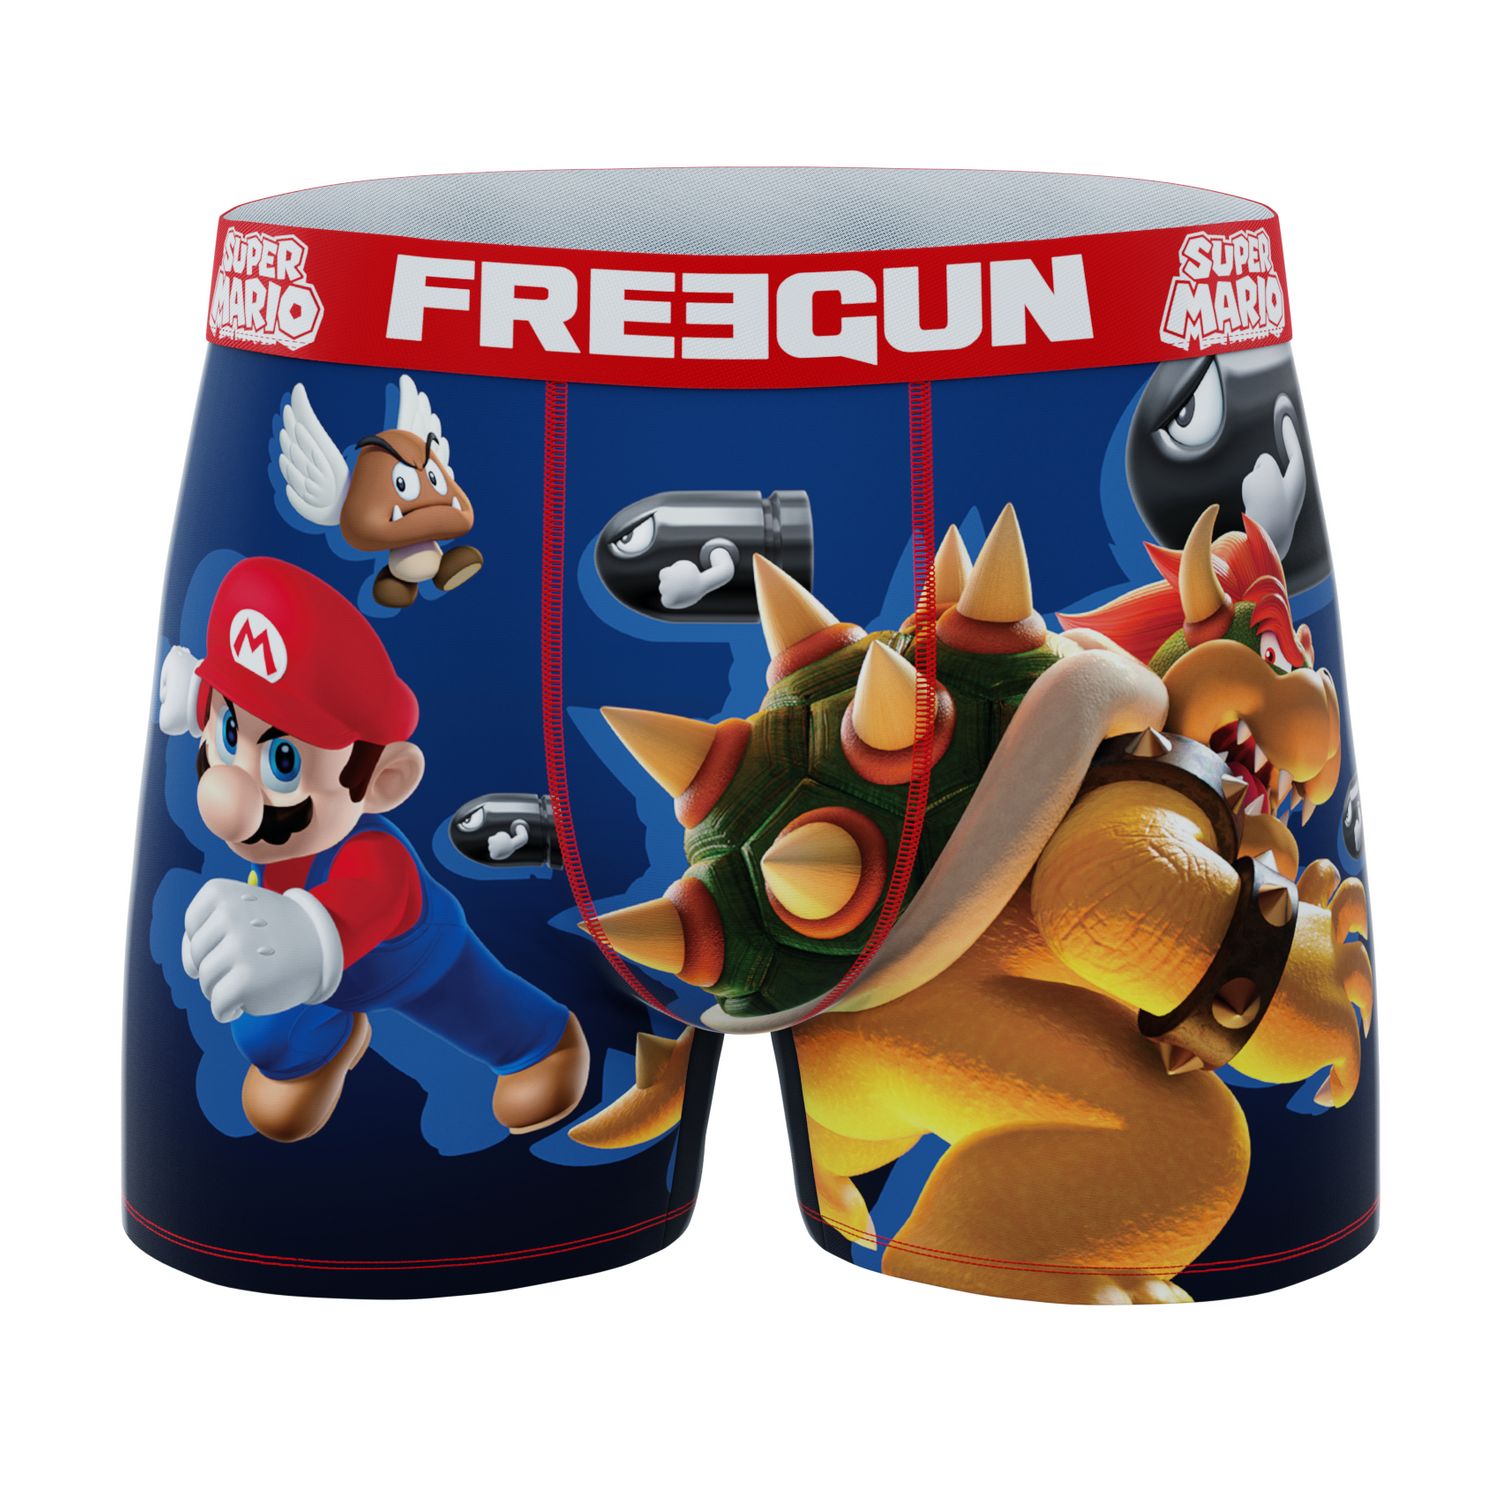 Freegun Super Mario Herren Boxershorts 2er Pack Luigi Bowser Gumba Piranha günstig online kaufen